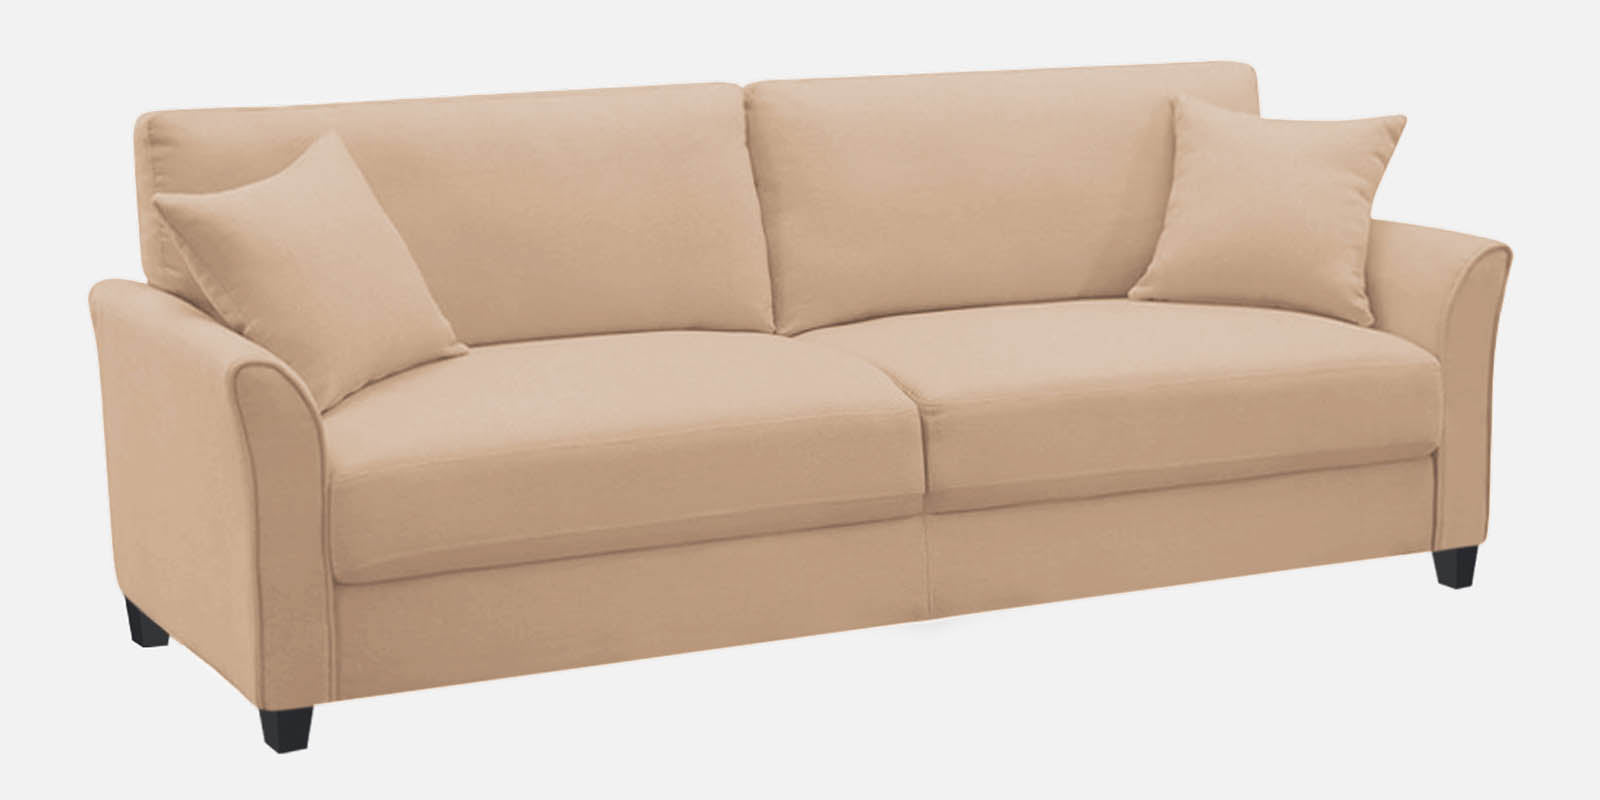 Daroo Velvet 3 Seater Sofa in Camel Beige Colour